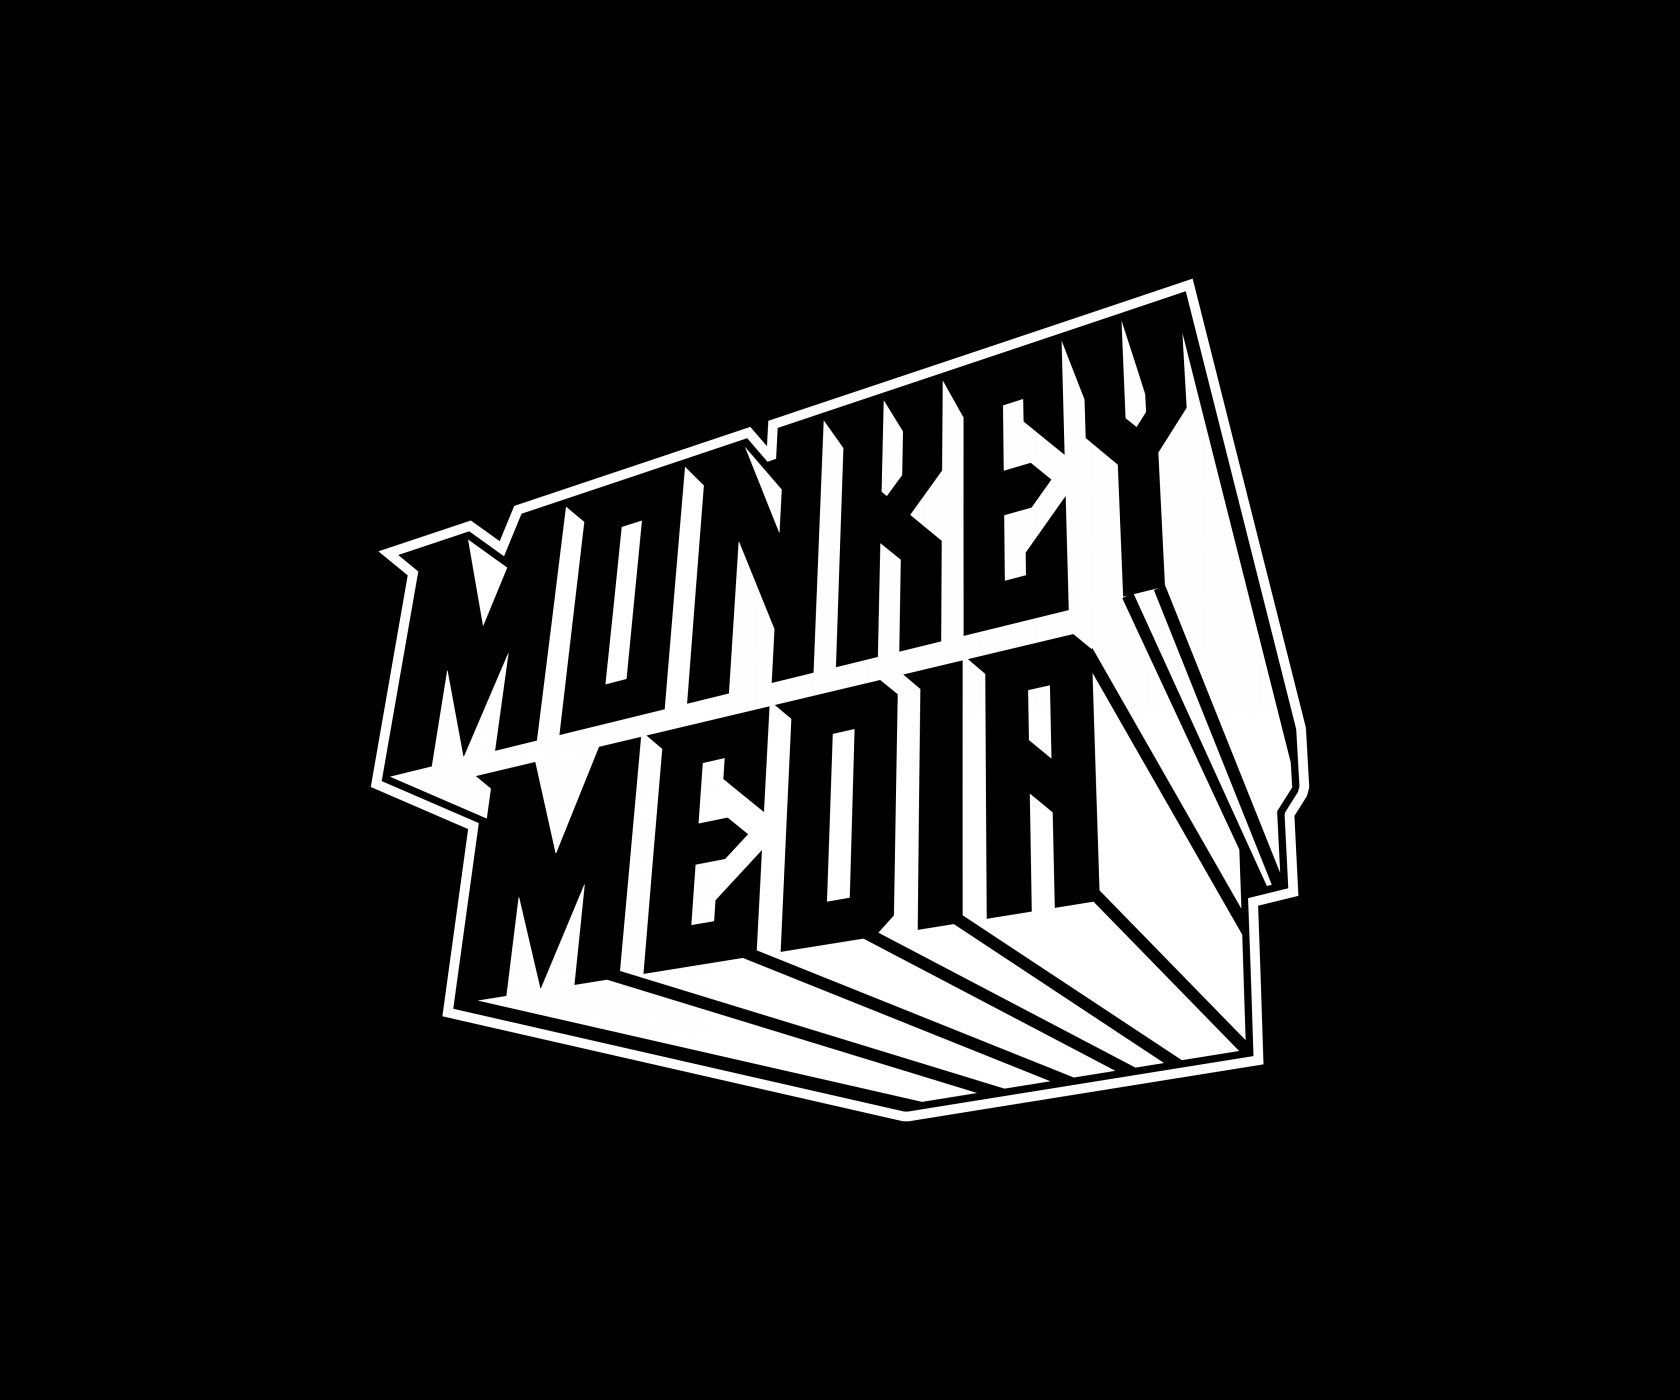 MonkeyMedia